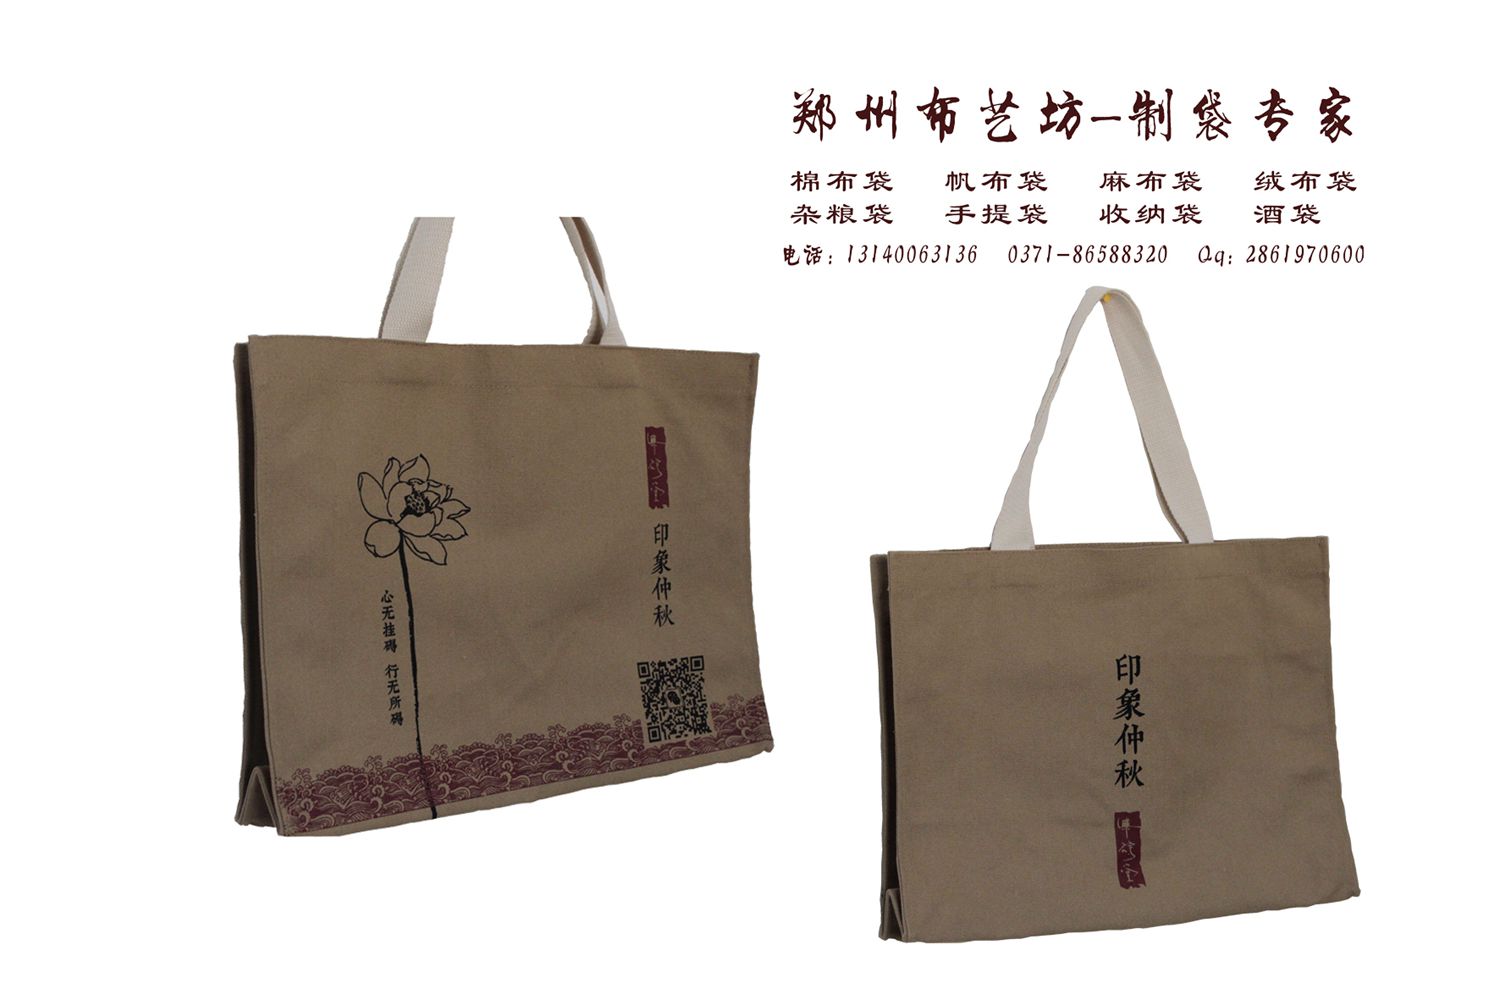 中国香港帆布手提袋公司 中国香港棉布大米袋定制厂家 中国香港麻布杂粮袋工厂